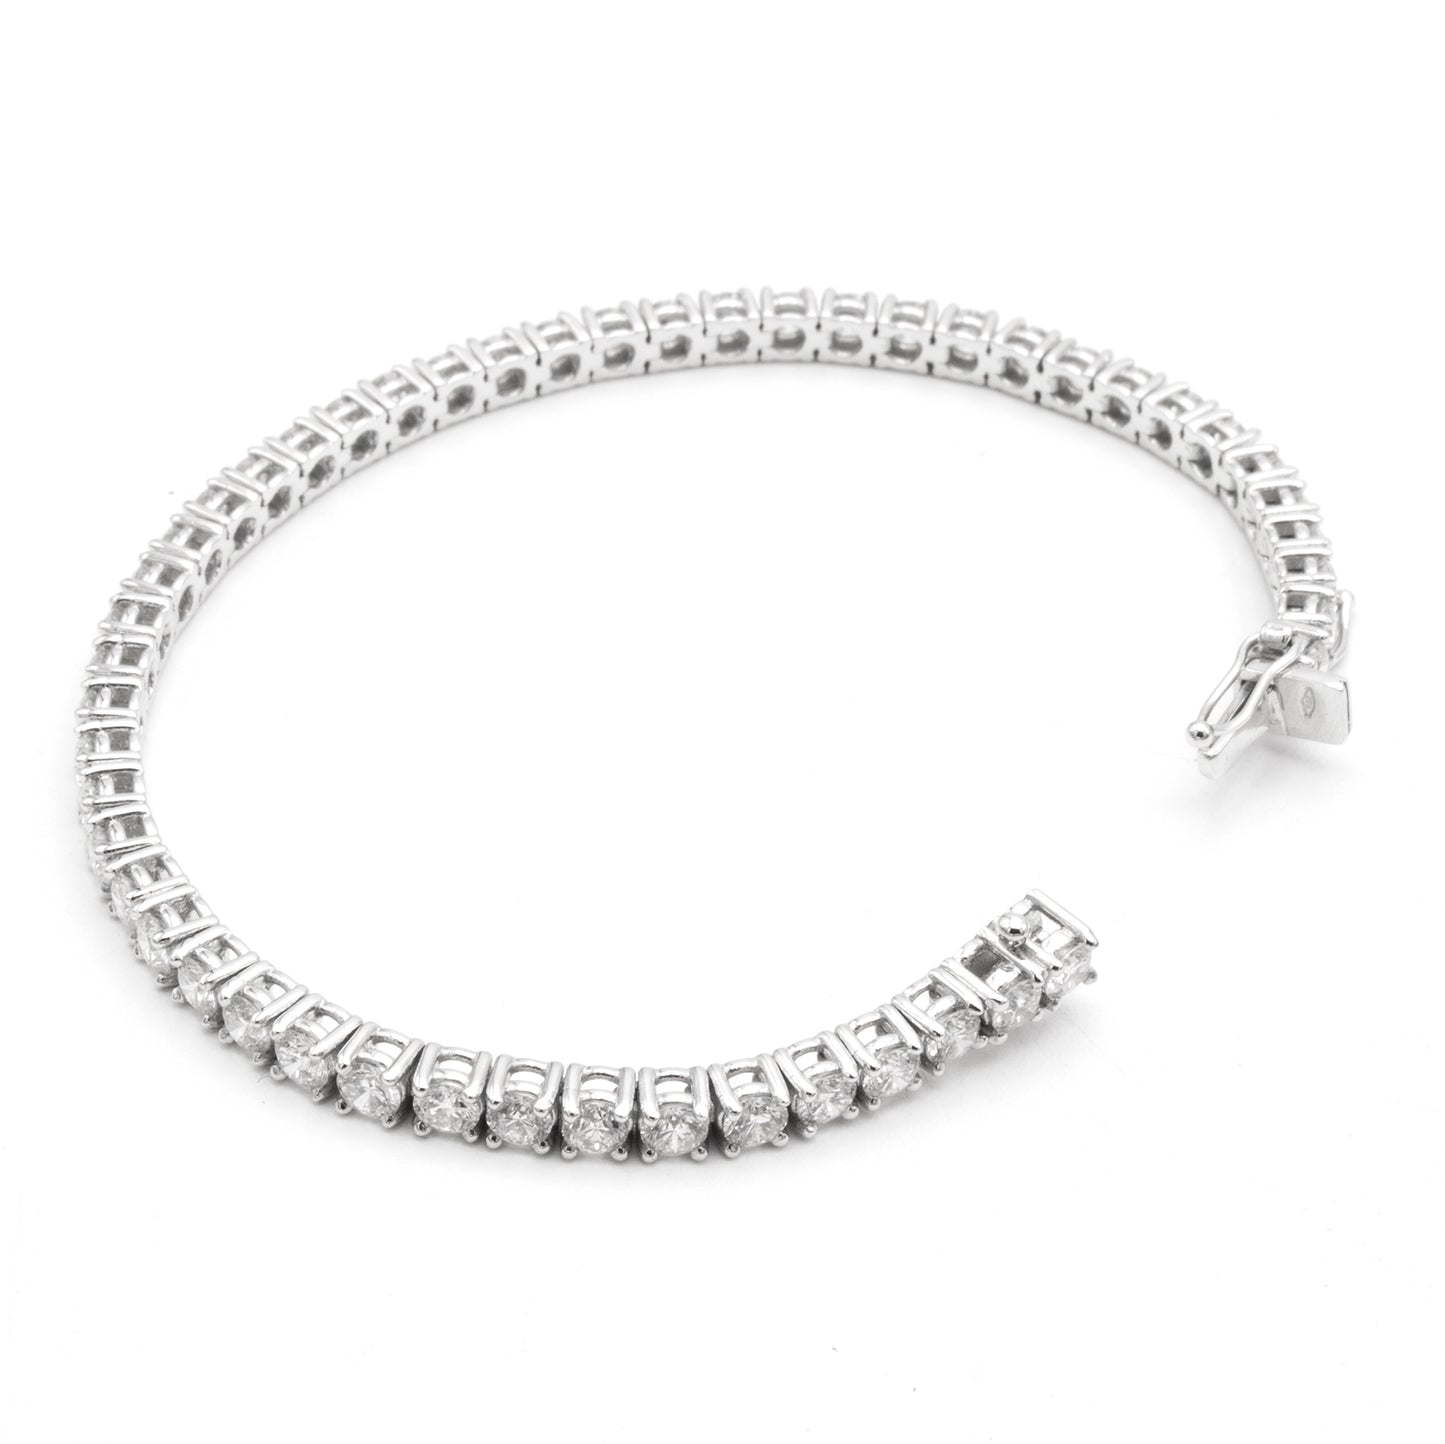 Luxe & Em diamonds bracelet